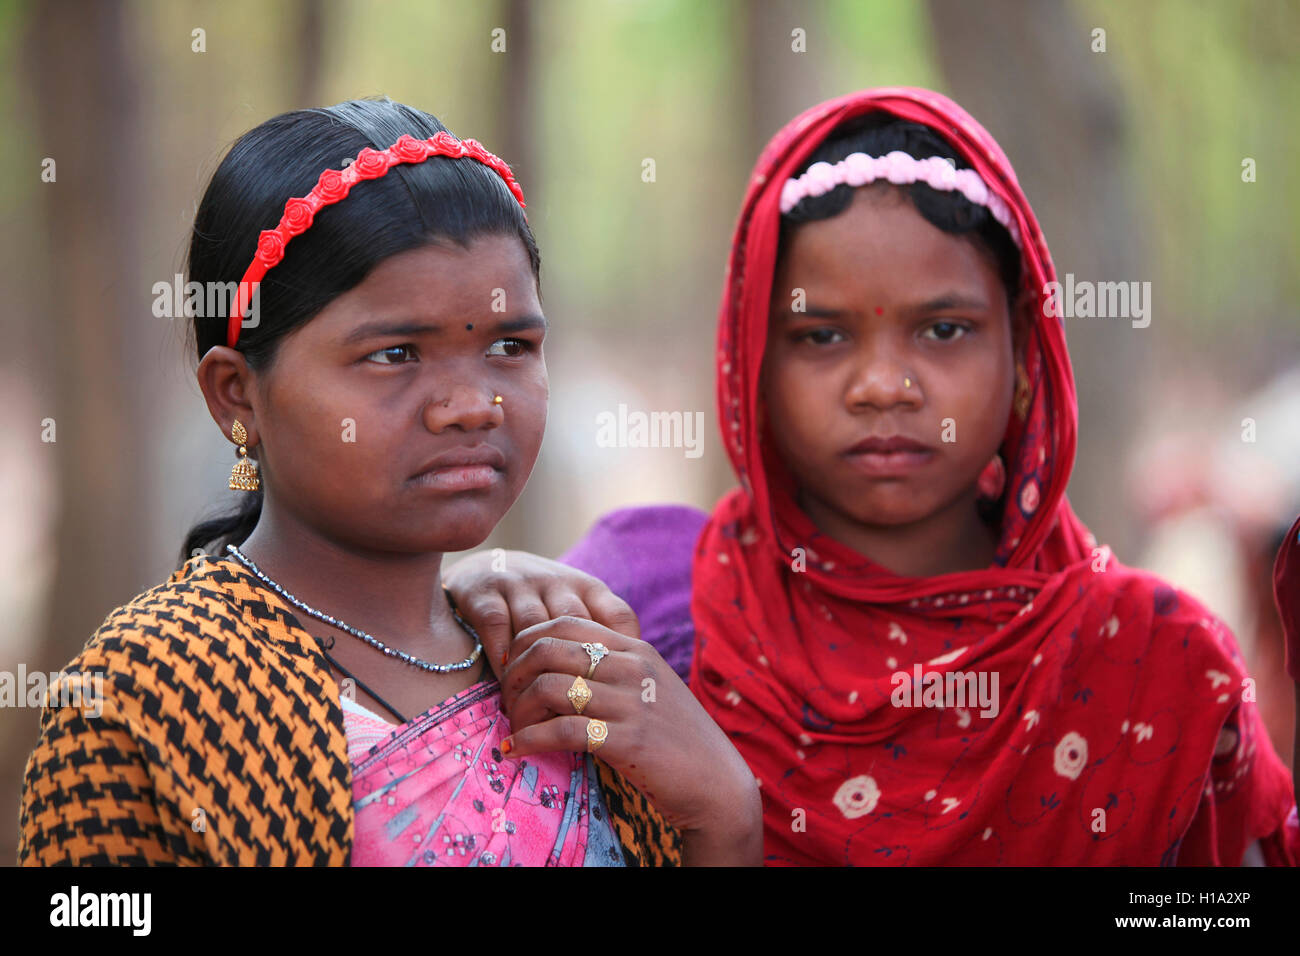 Tribal Women, Dhurwa Tribe, Pandripani Village, Chattisgadh, Inde. Visages ruraux de l'Inde Banque D'Images